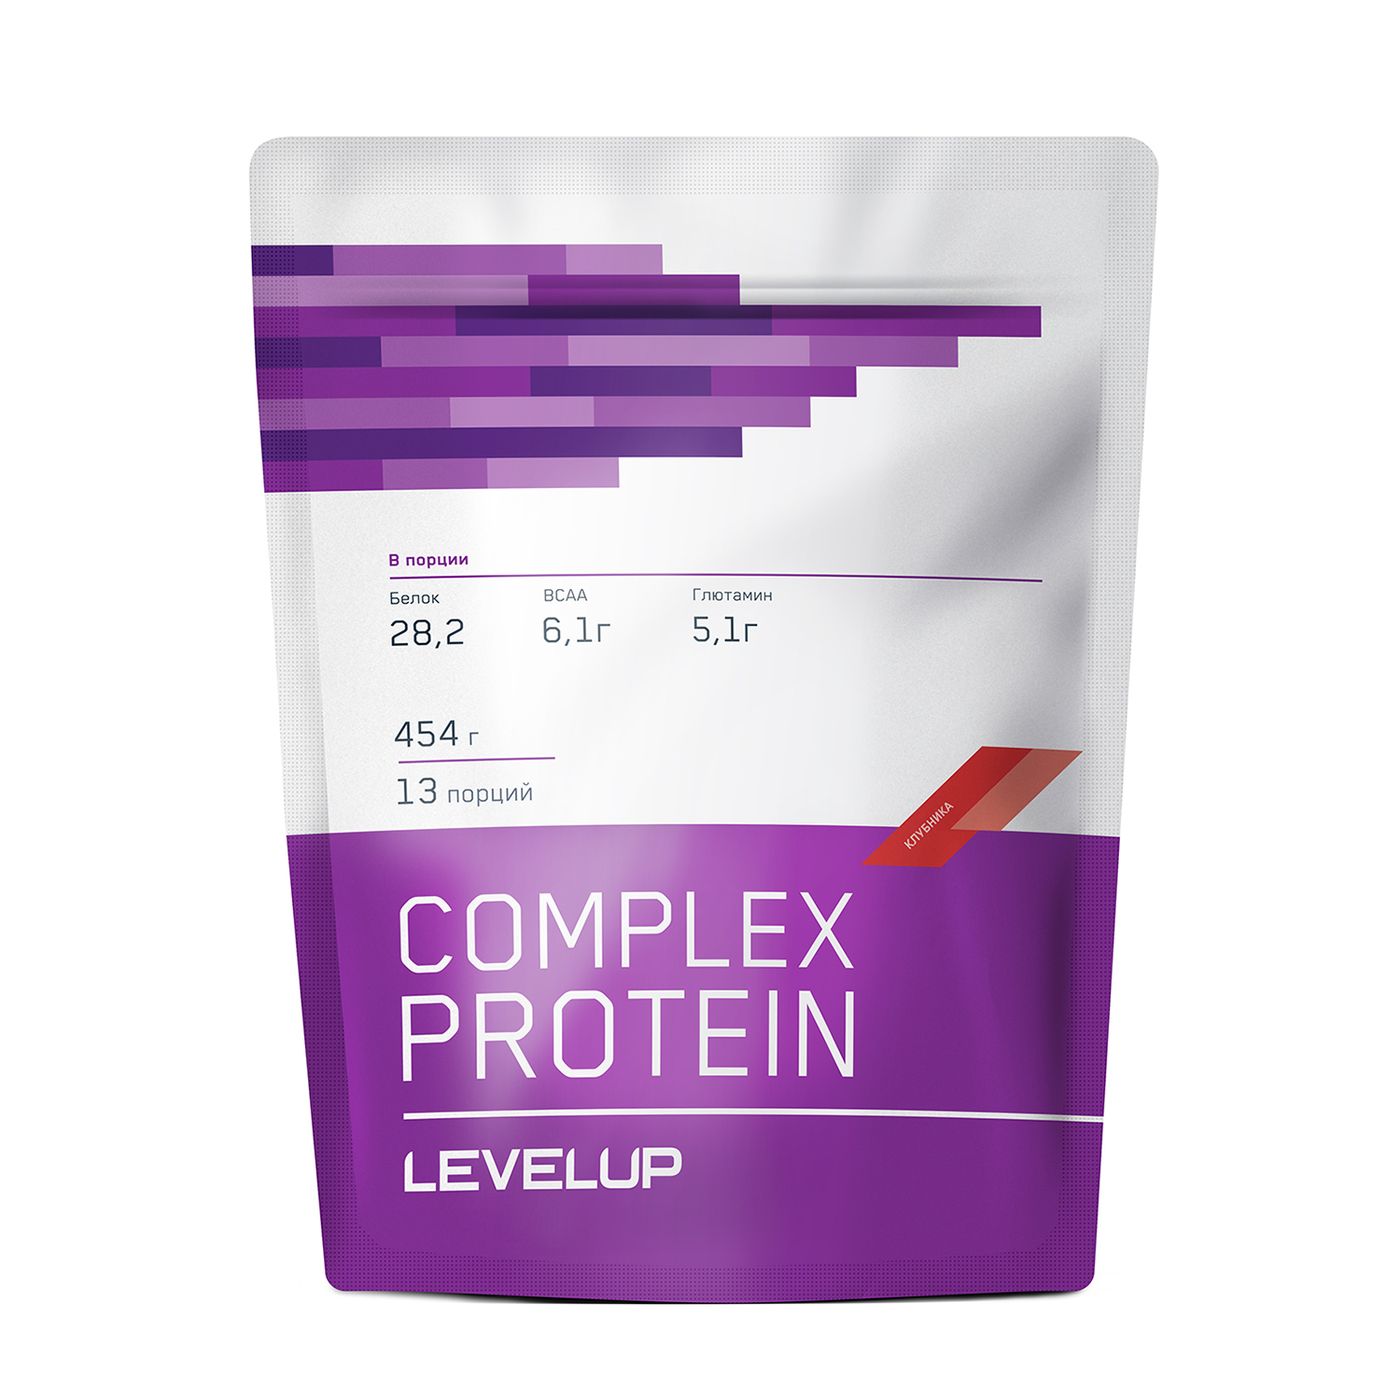 LevelUp Complex Protein Протеин 454 гр